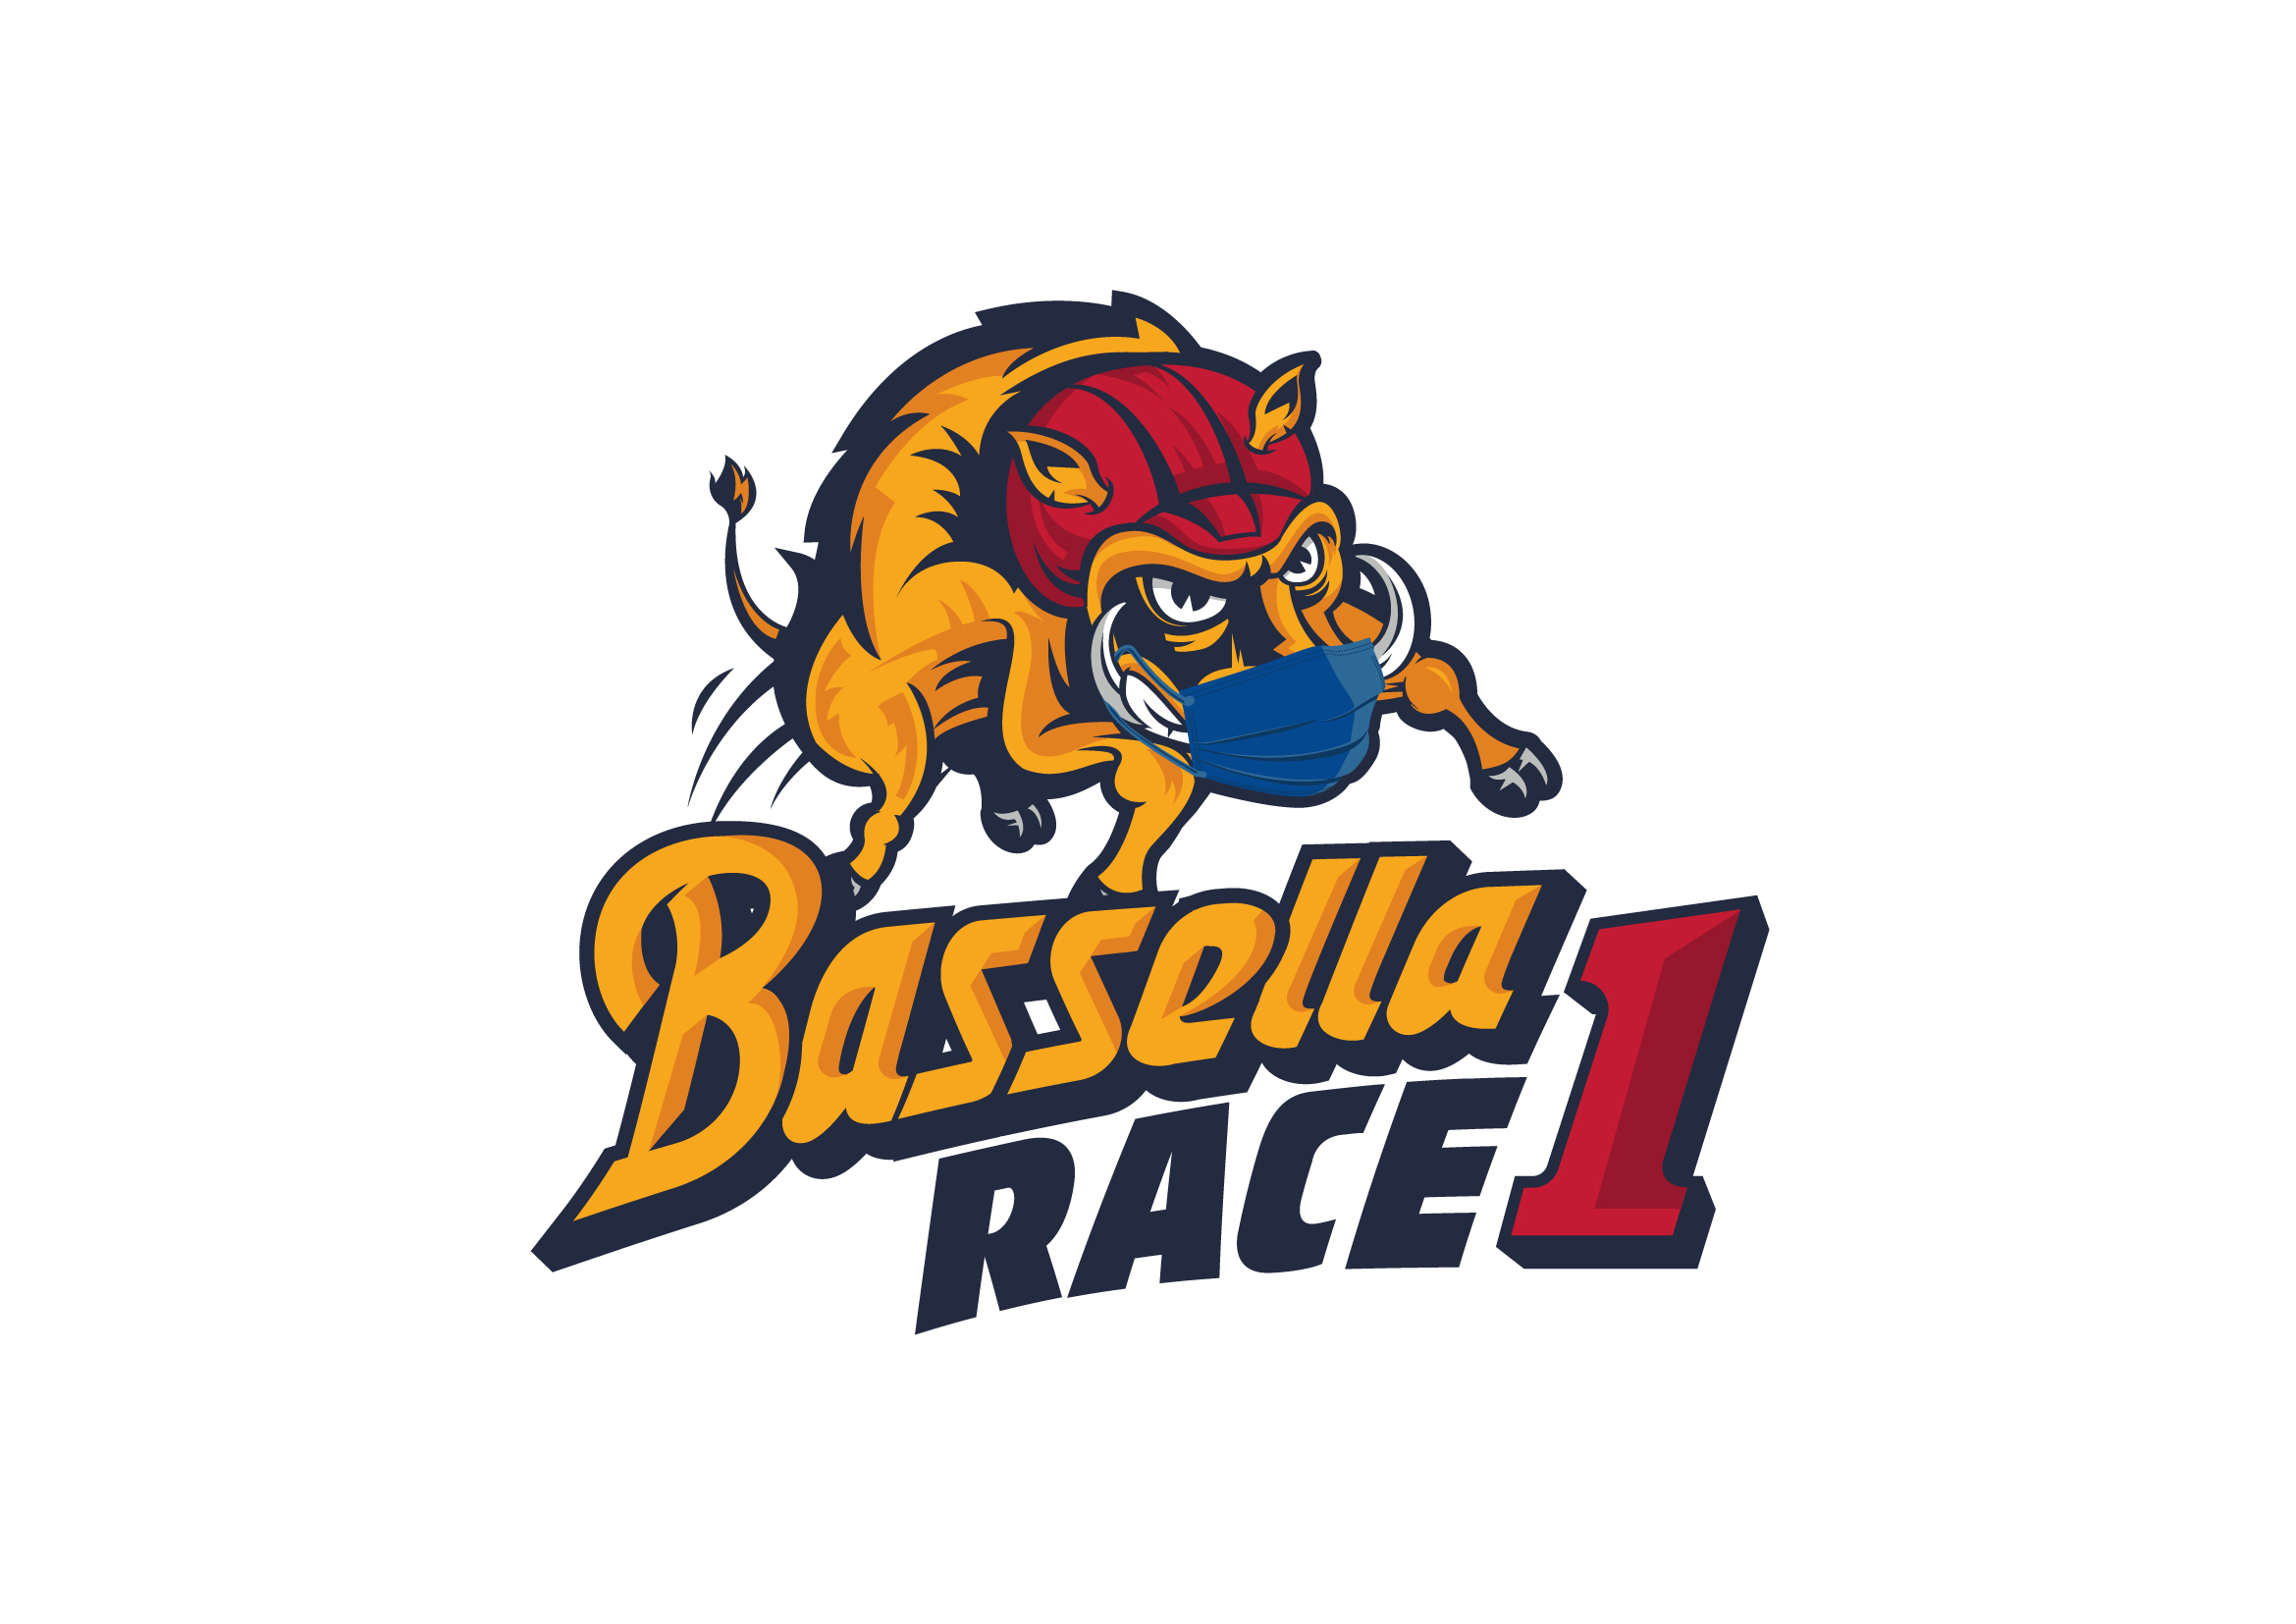 La Bassella Race 1 2021 se reinventa para seguir disfrutando de forma distinta del enduro